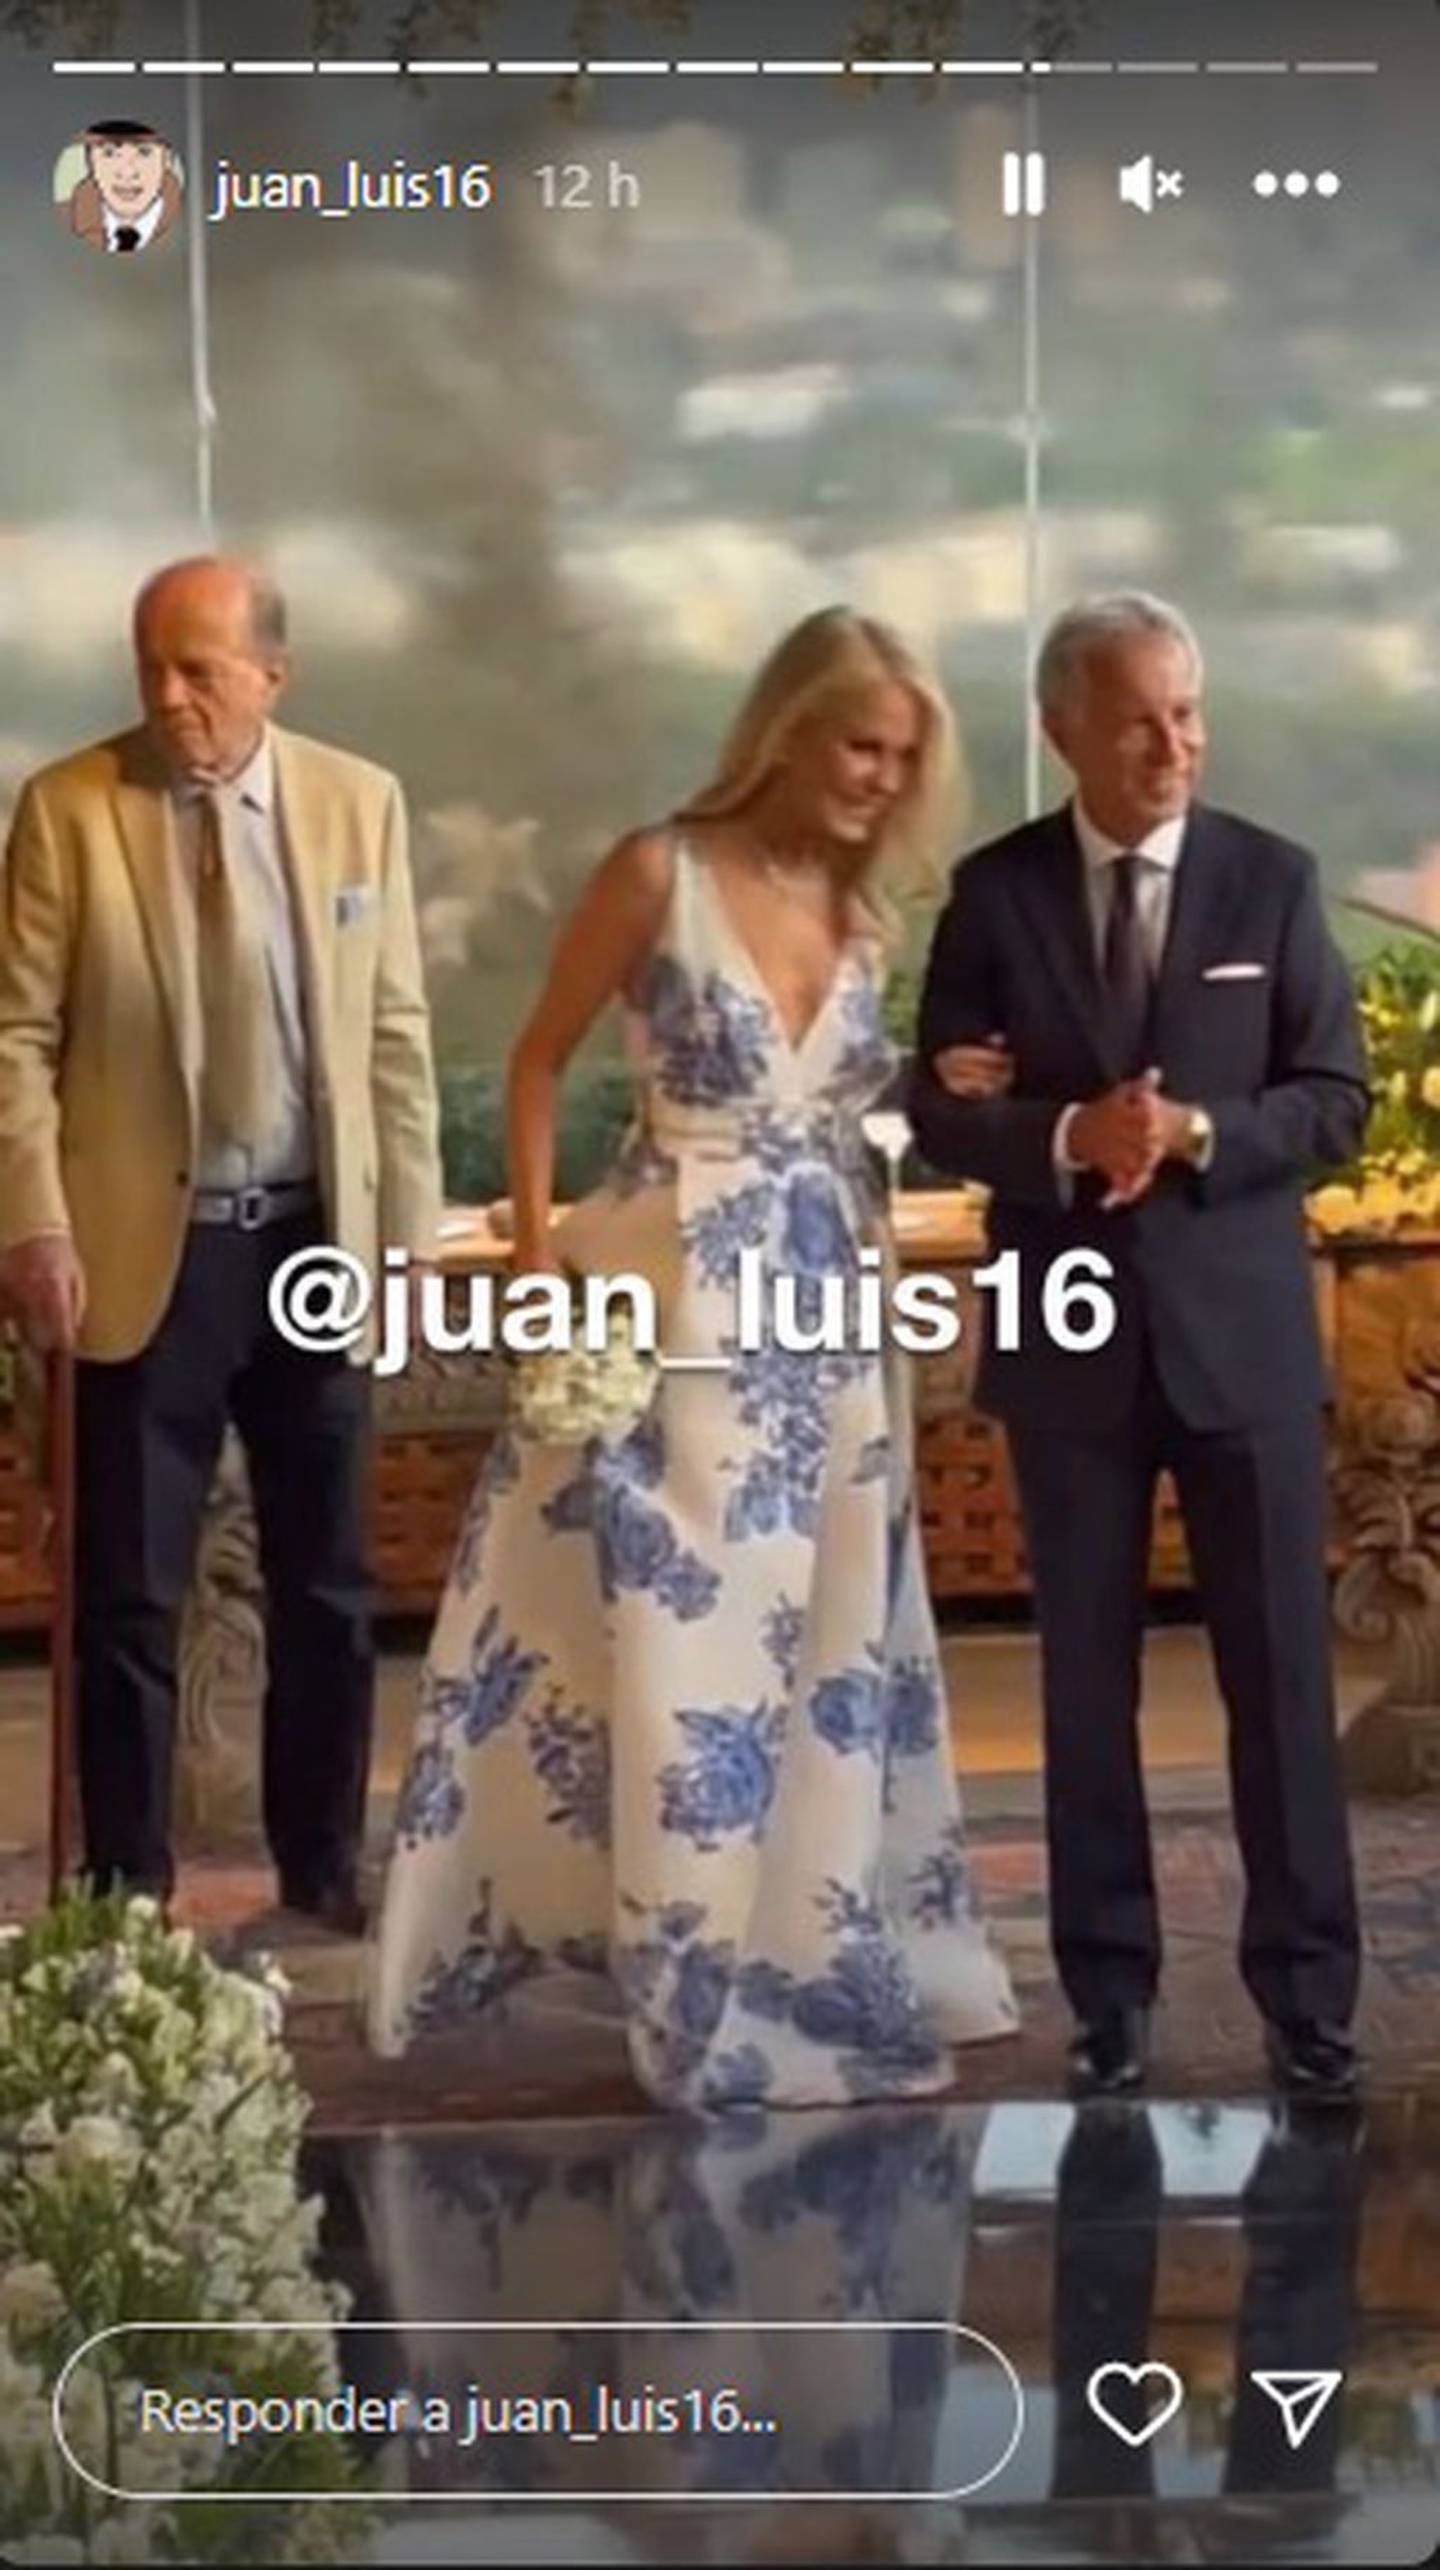 En las fotos, se puede ver a Cecilia luciendo un elegante vestido blanco con unos delicados detalles de flores azules.